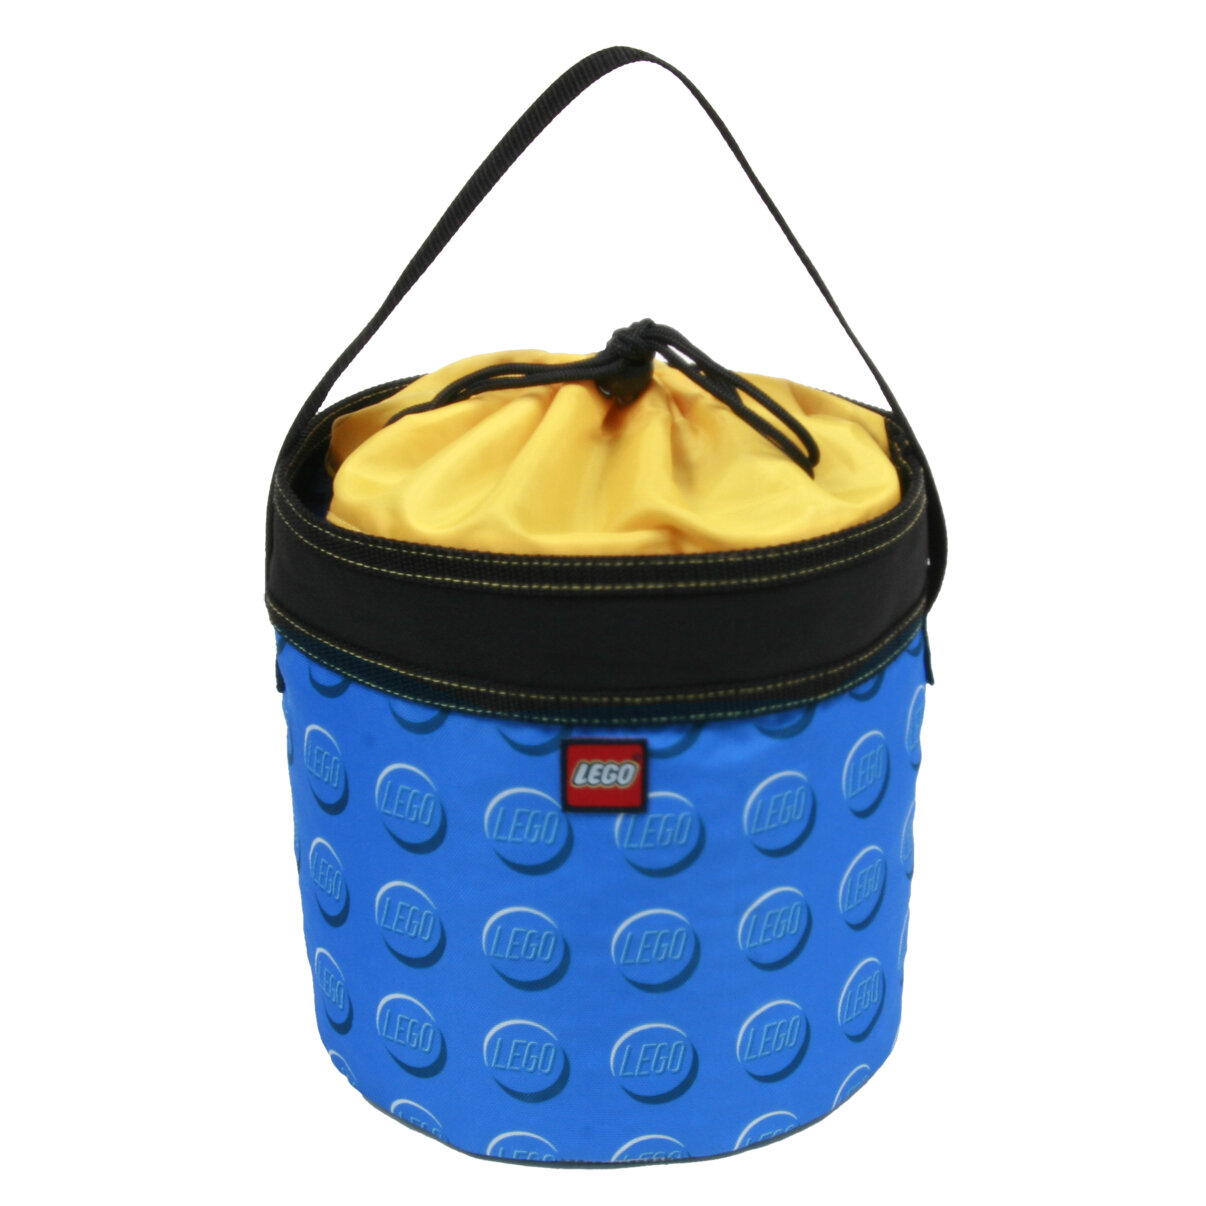 Lego Blue Cinch Bucket